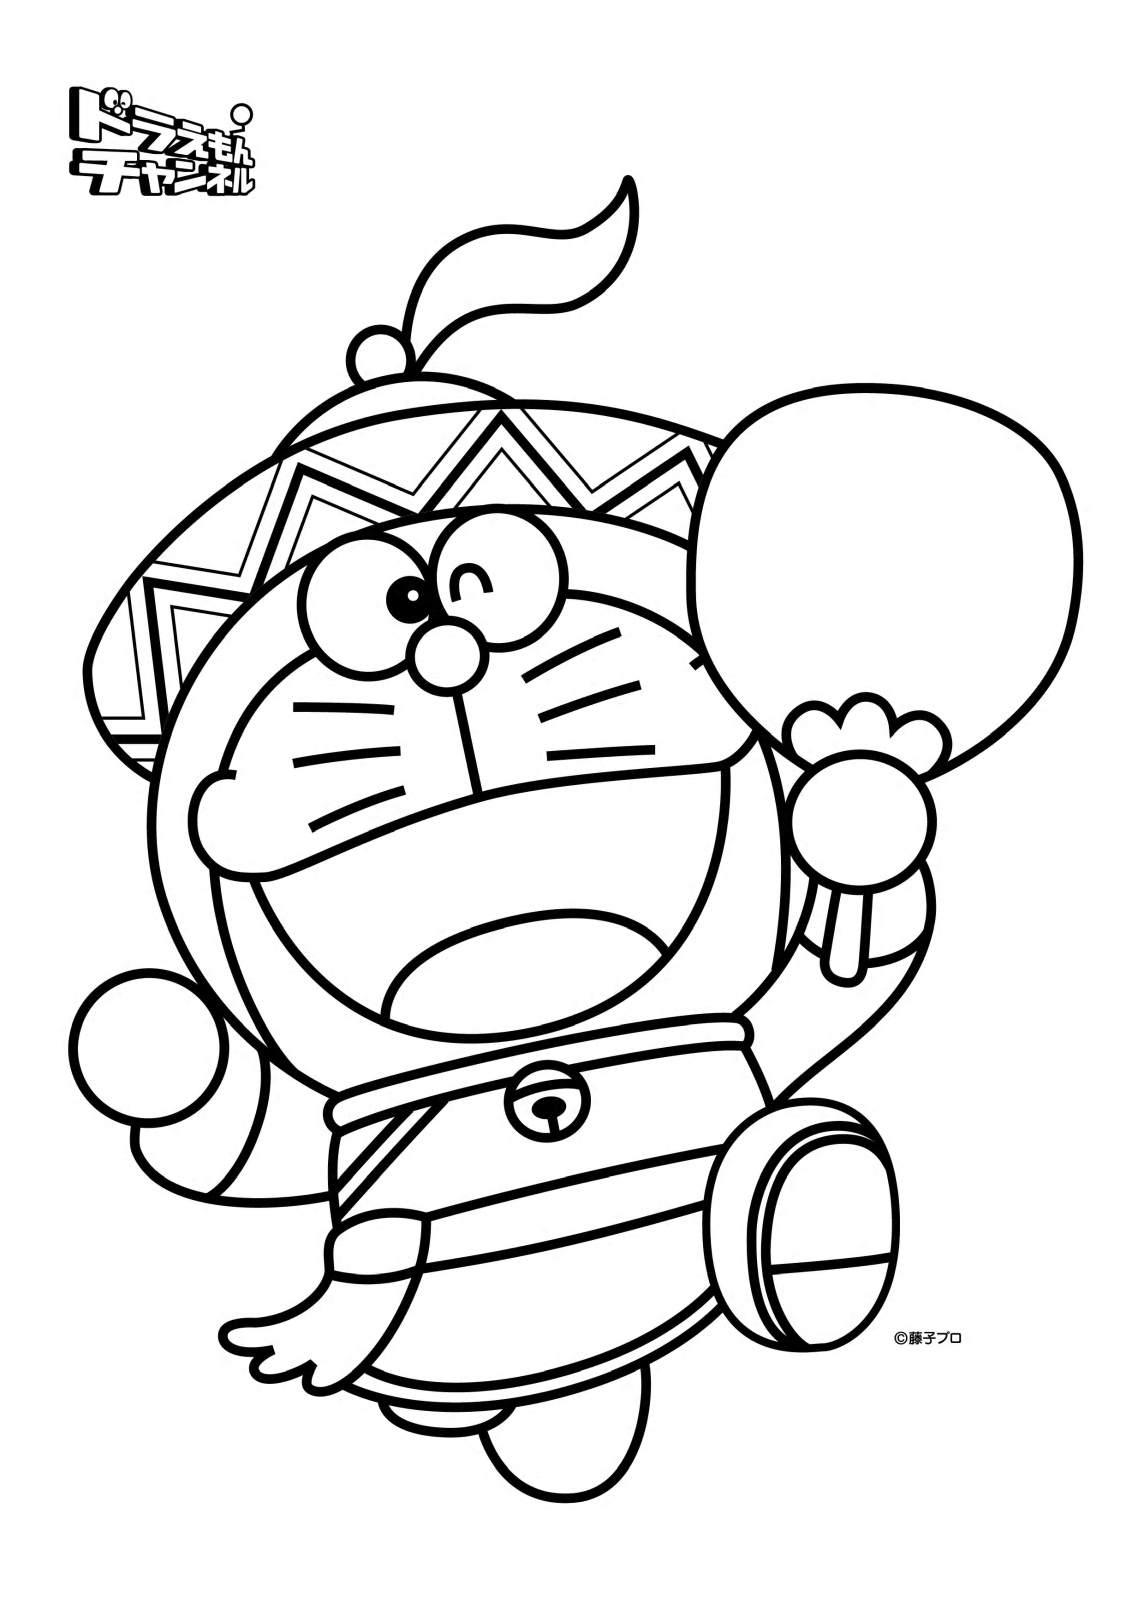 Tranh tô màu Doraemon cho bé